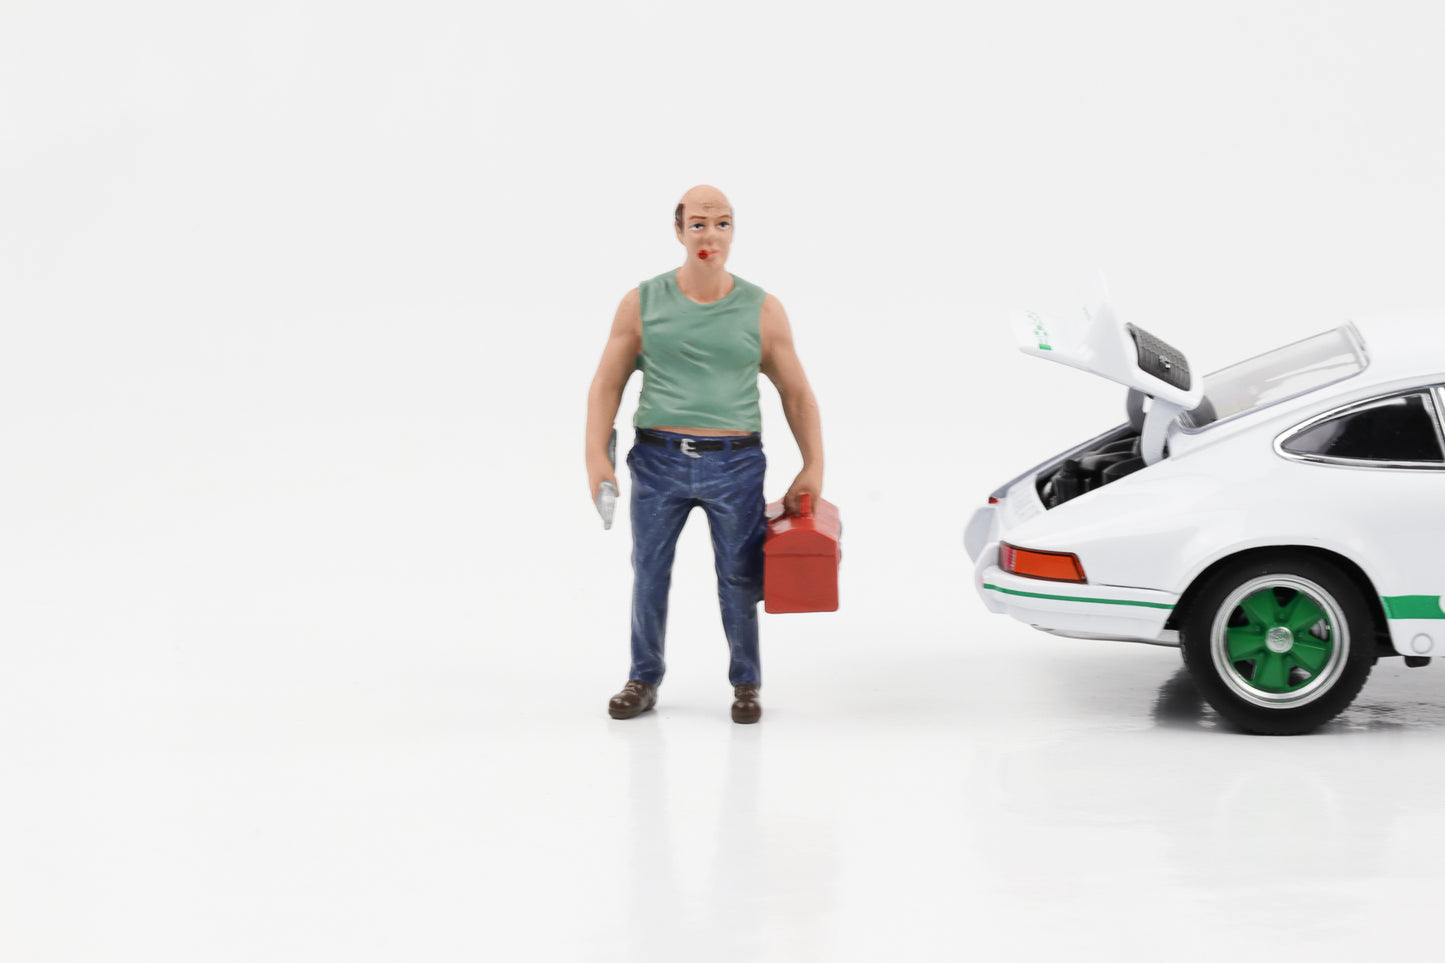 1:24 Figur Auto-Mechaniker Sam mit Werkzeugkiste American Diorama Figuren